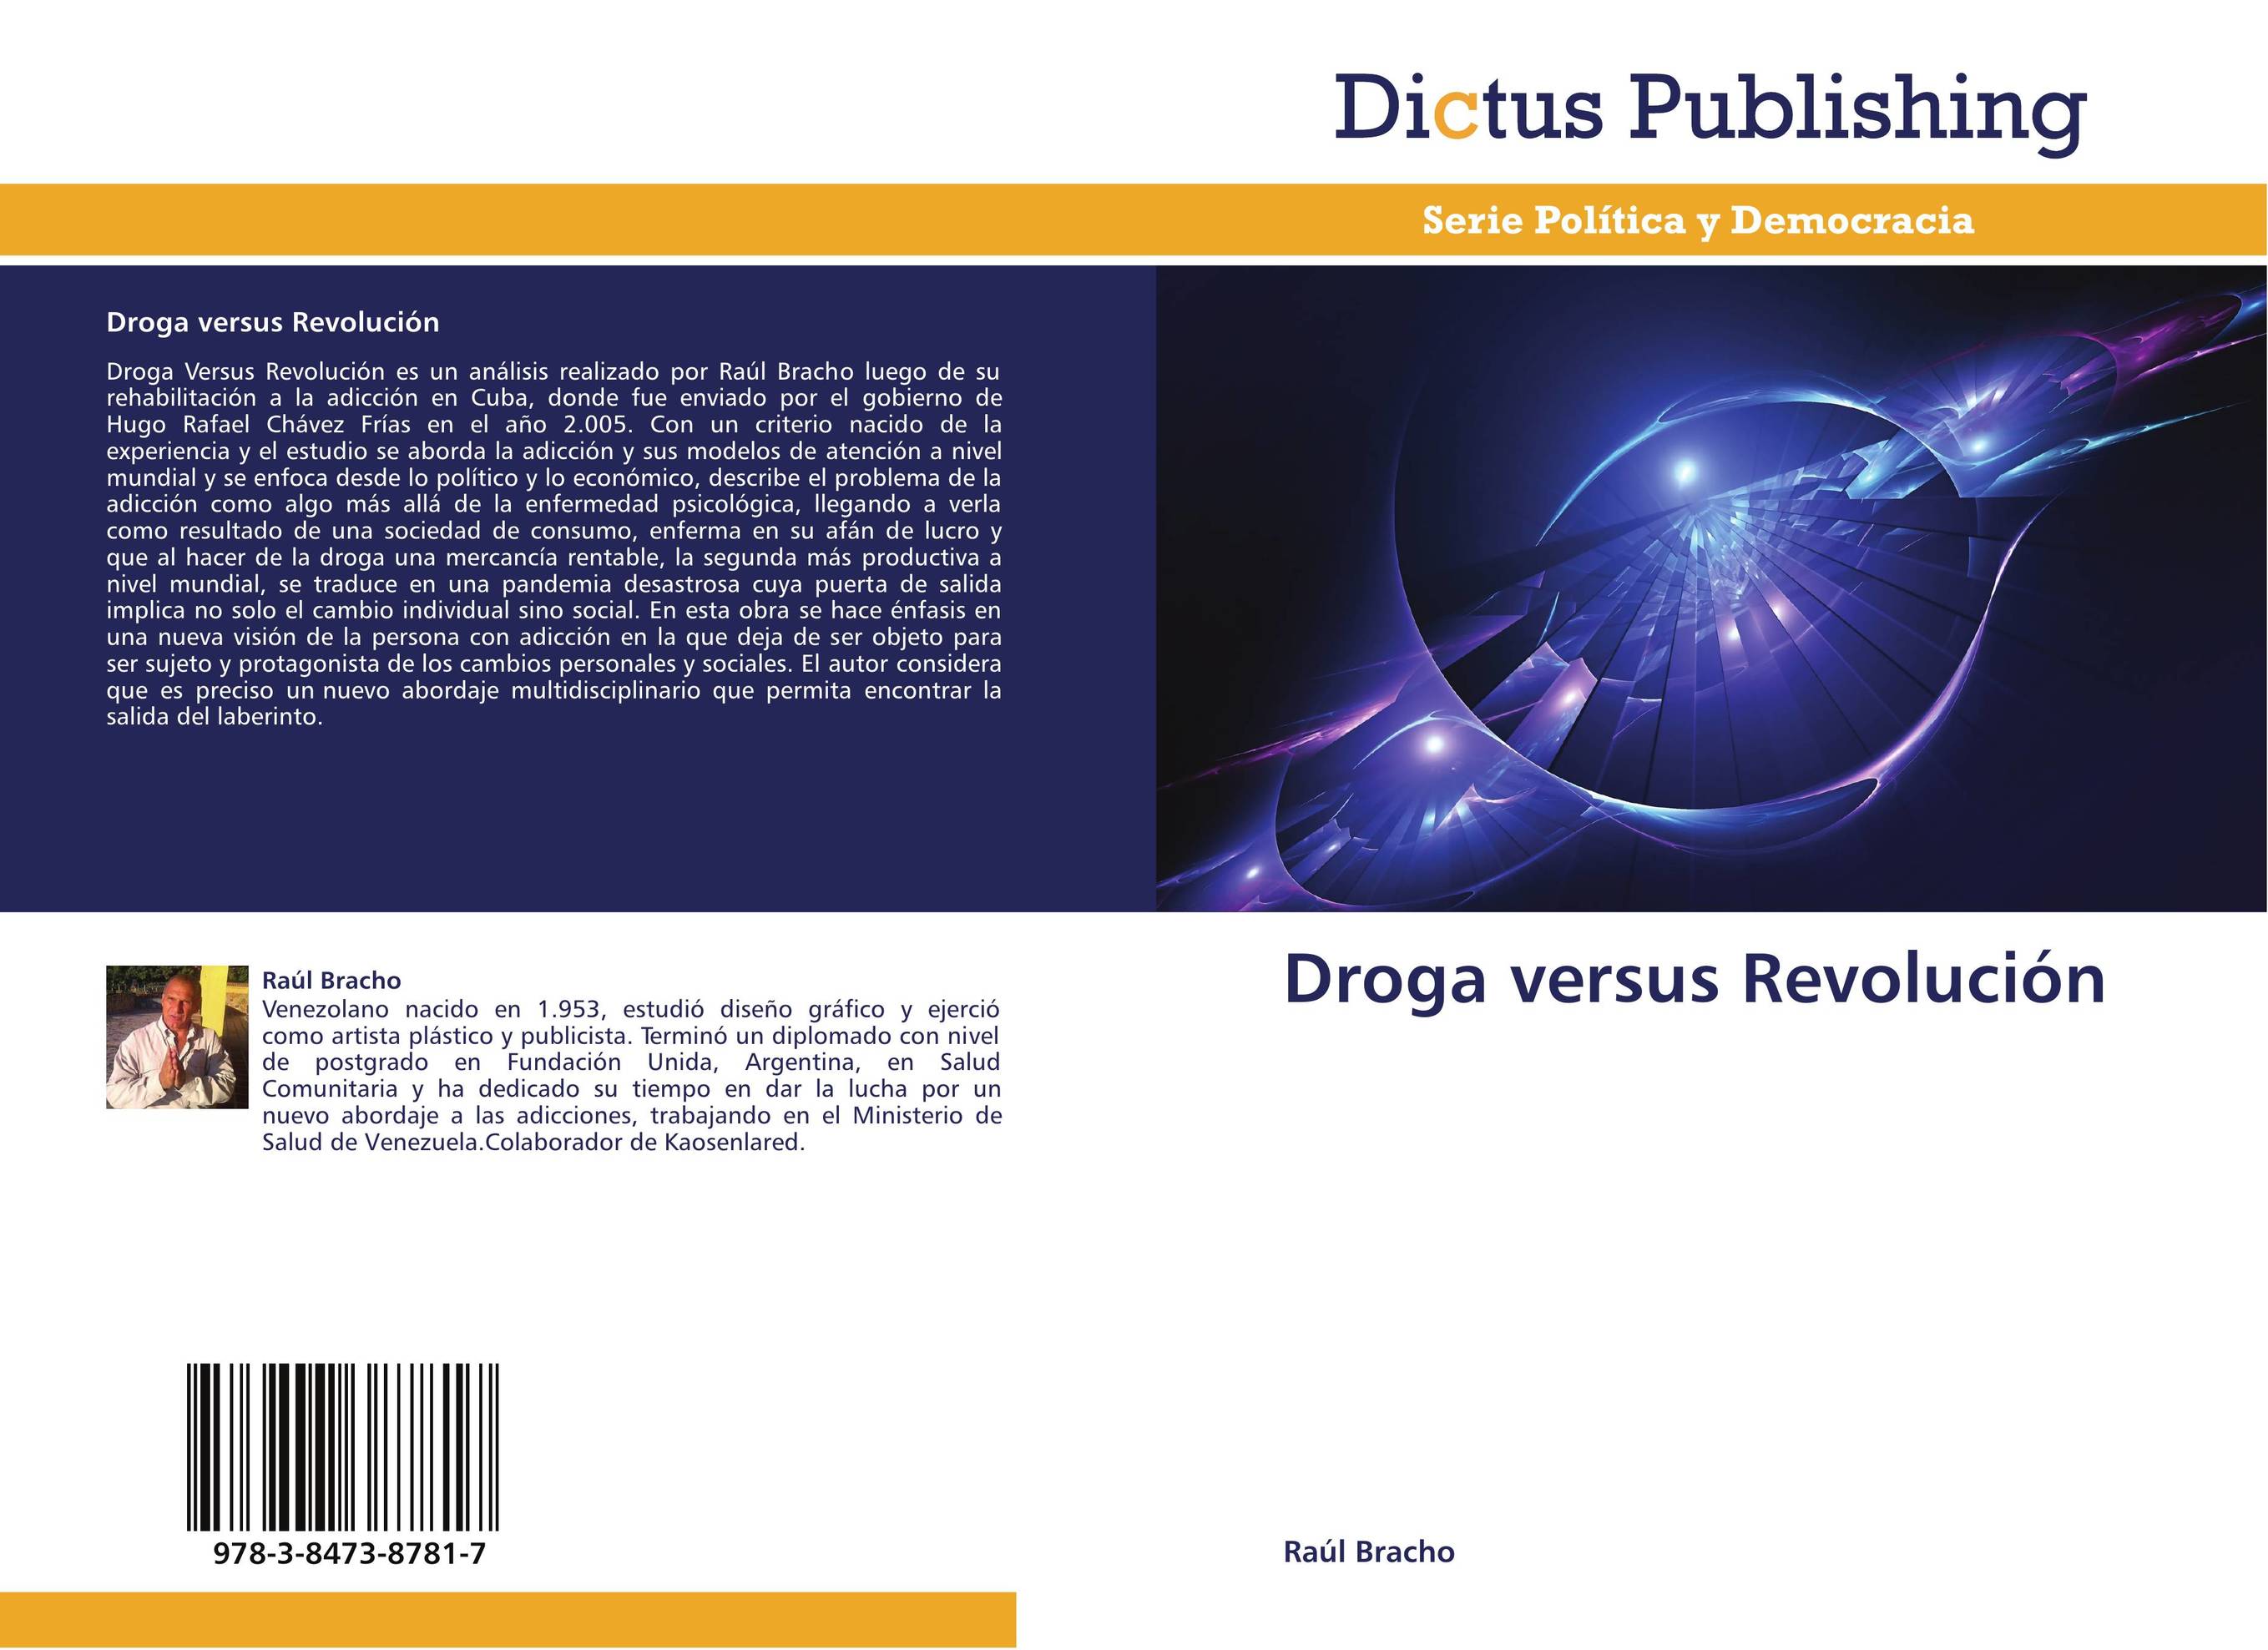 Droga versus Revolución